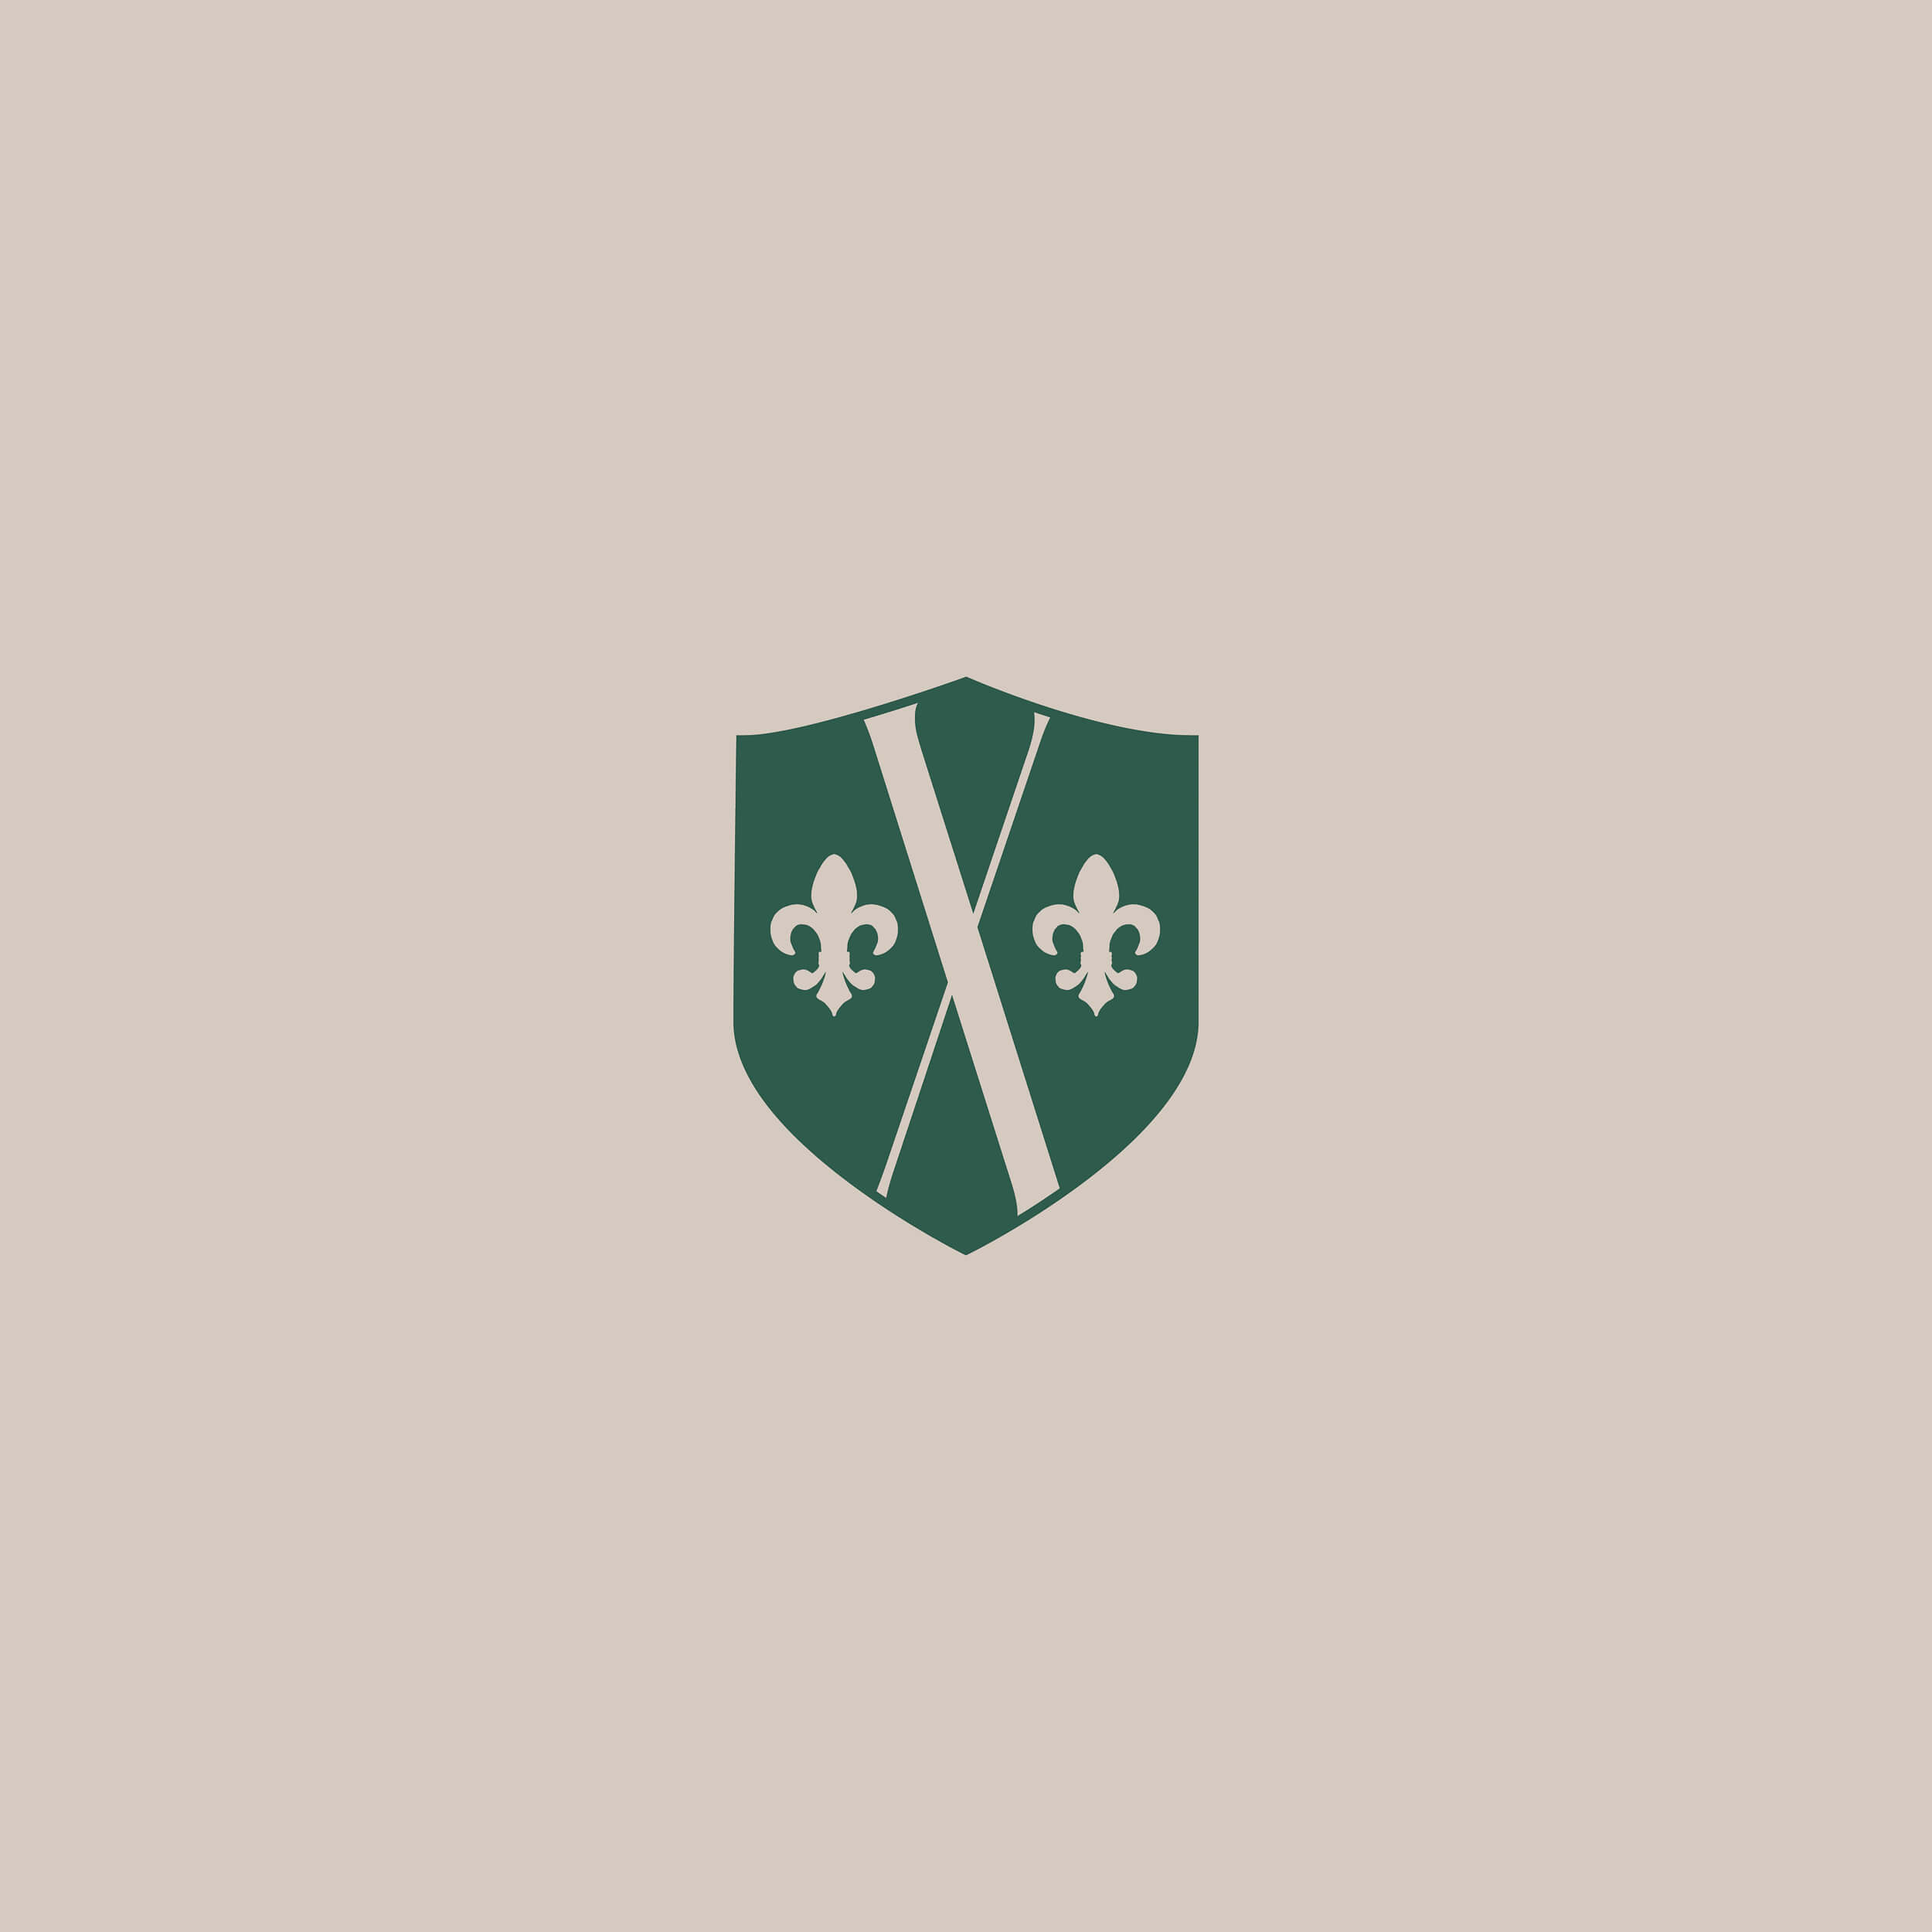 Das Wappen von RueX Values in Grün